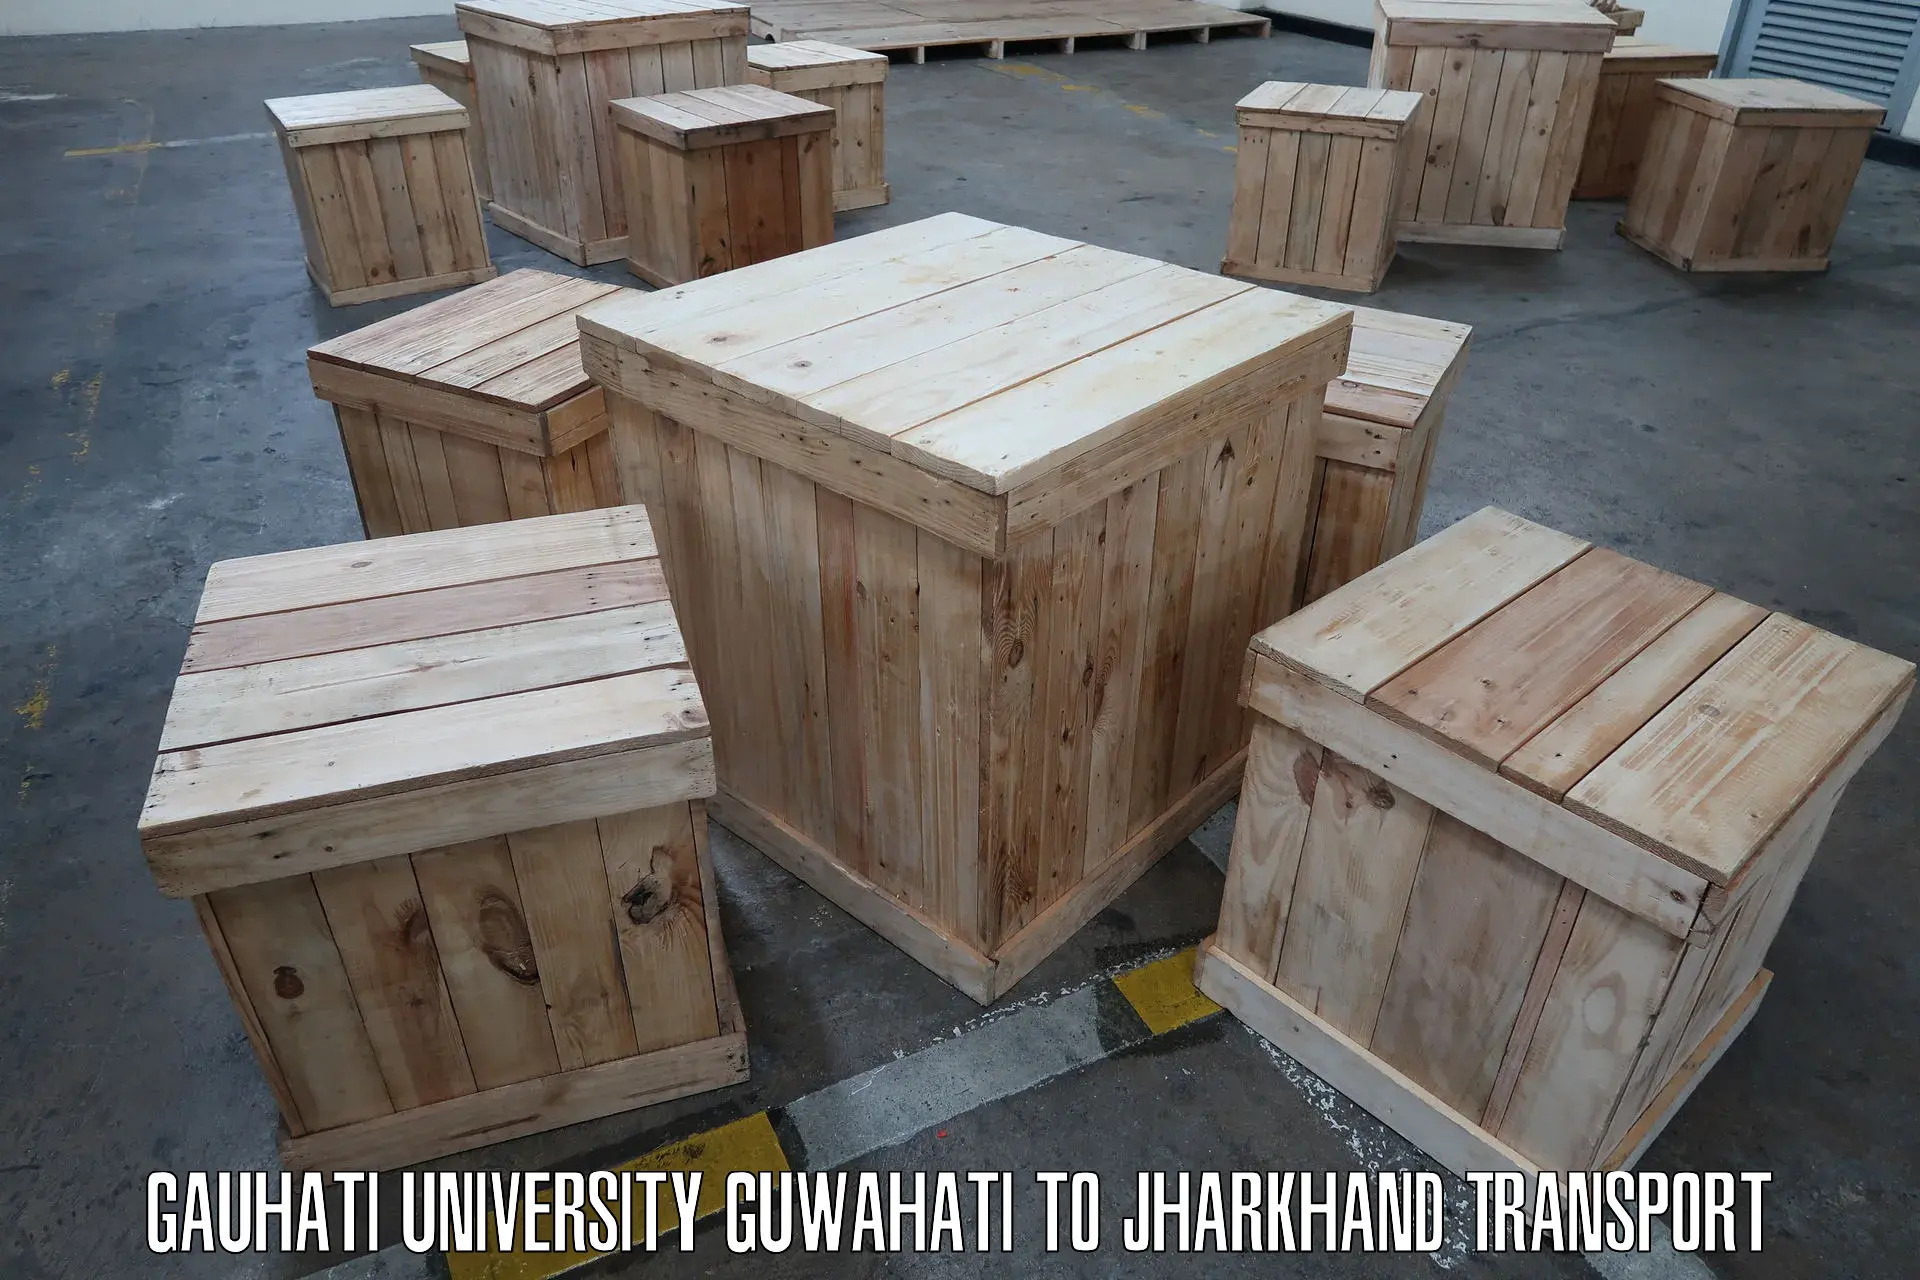 Lorry transport service Gauhati University Guwahati to Chakradharpur